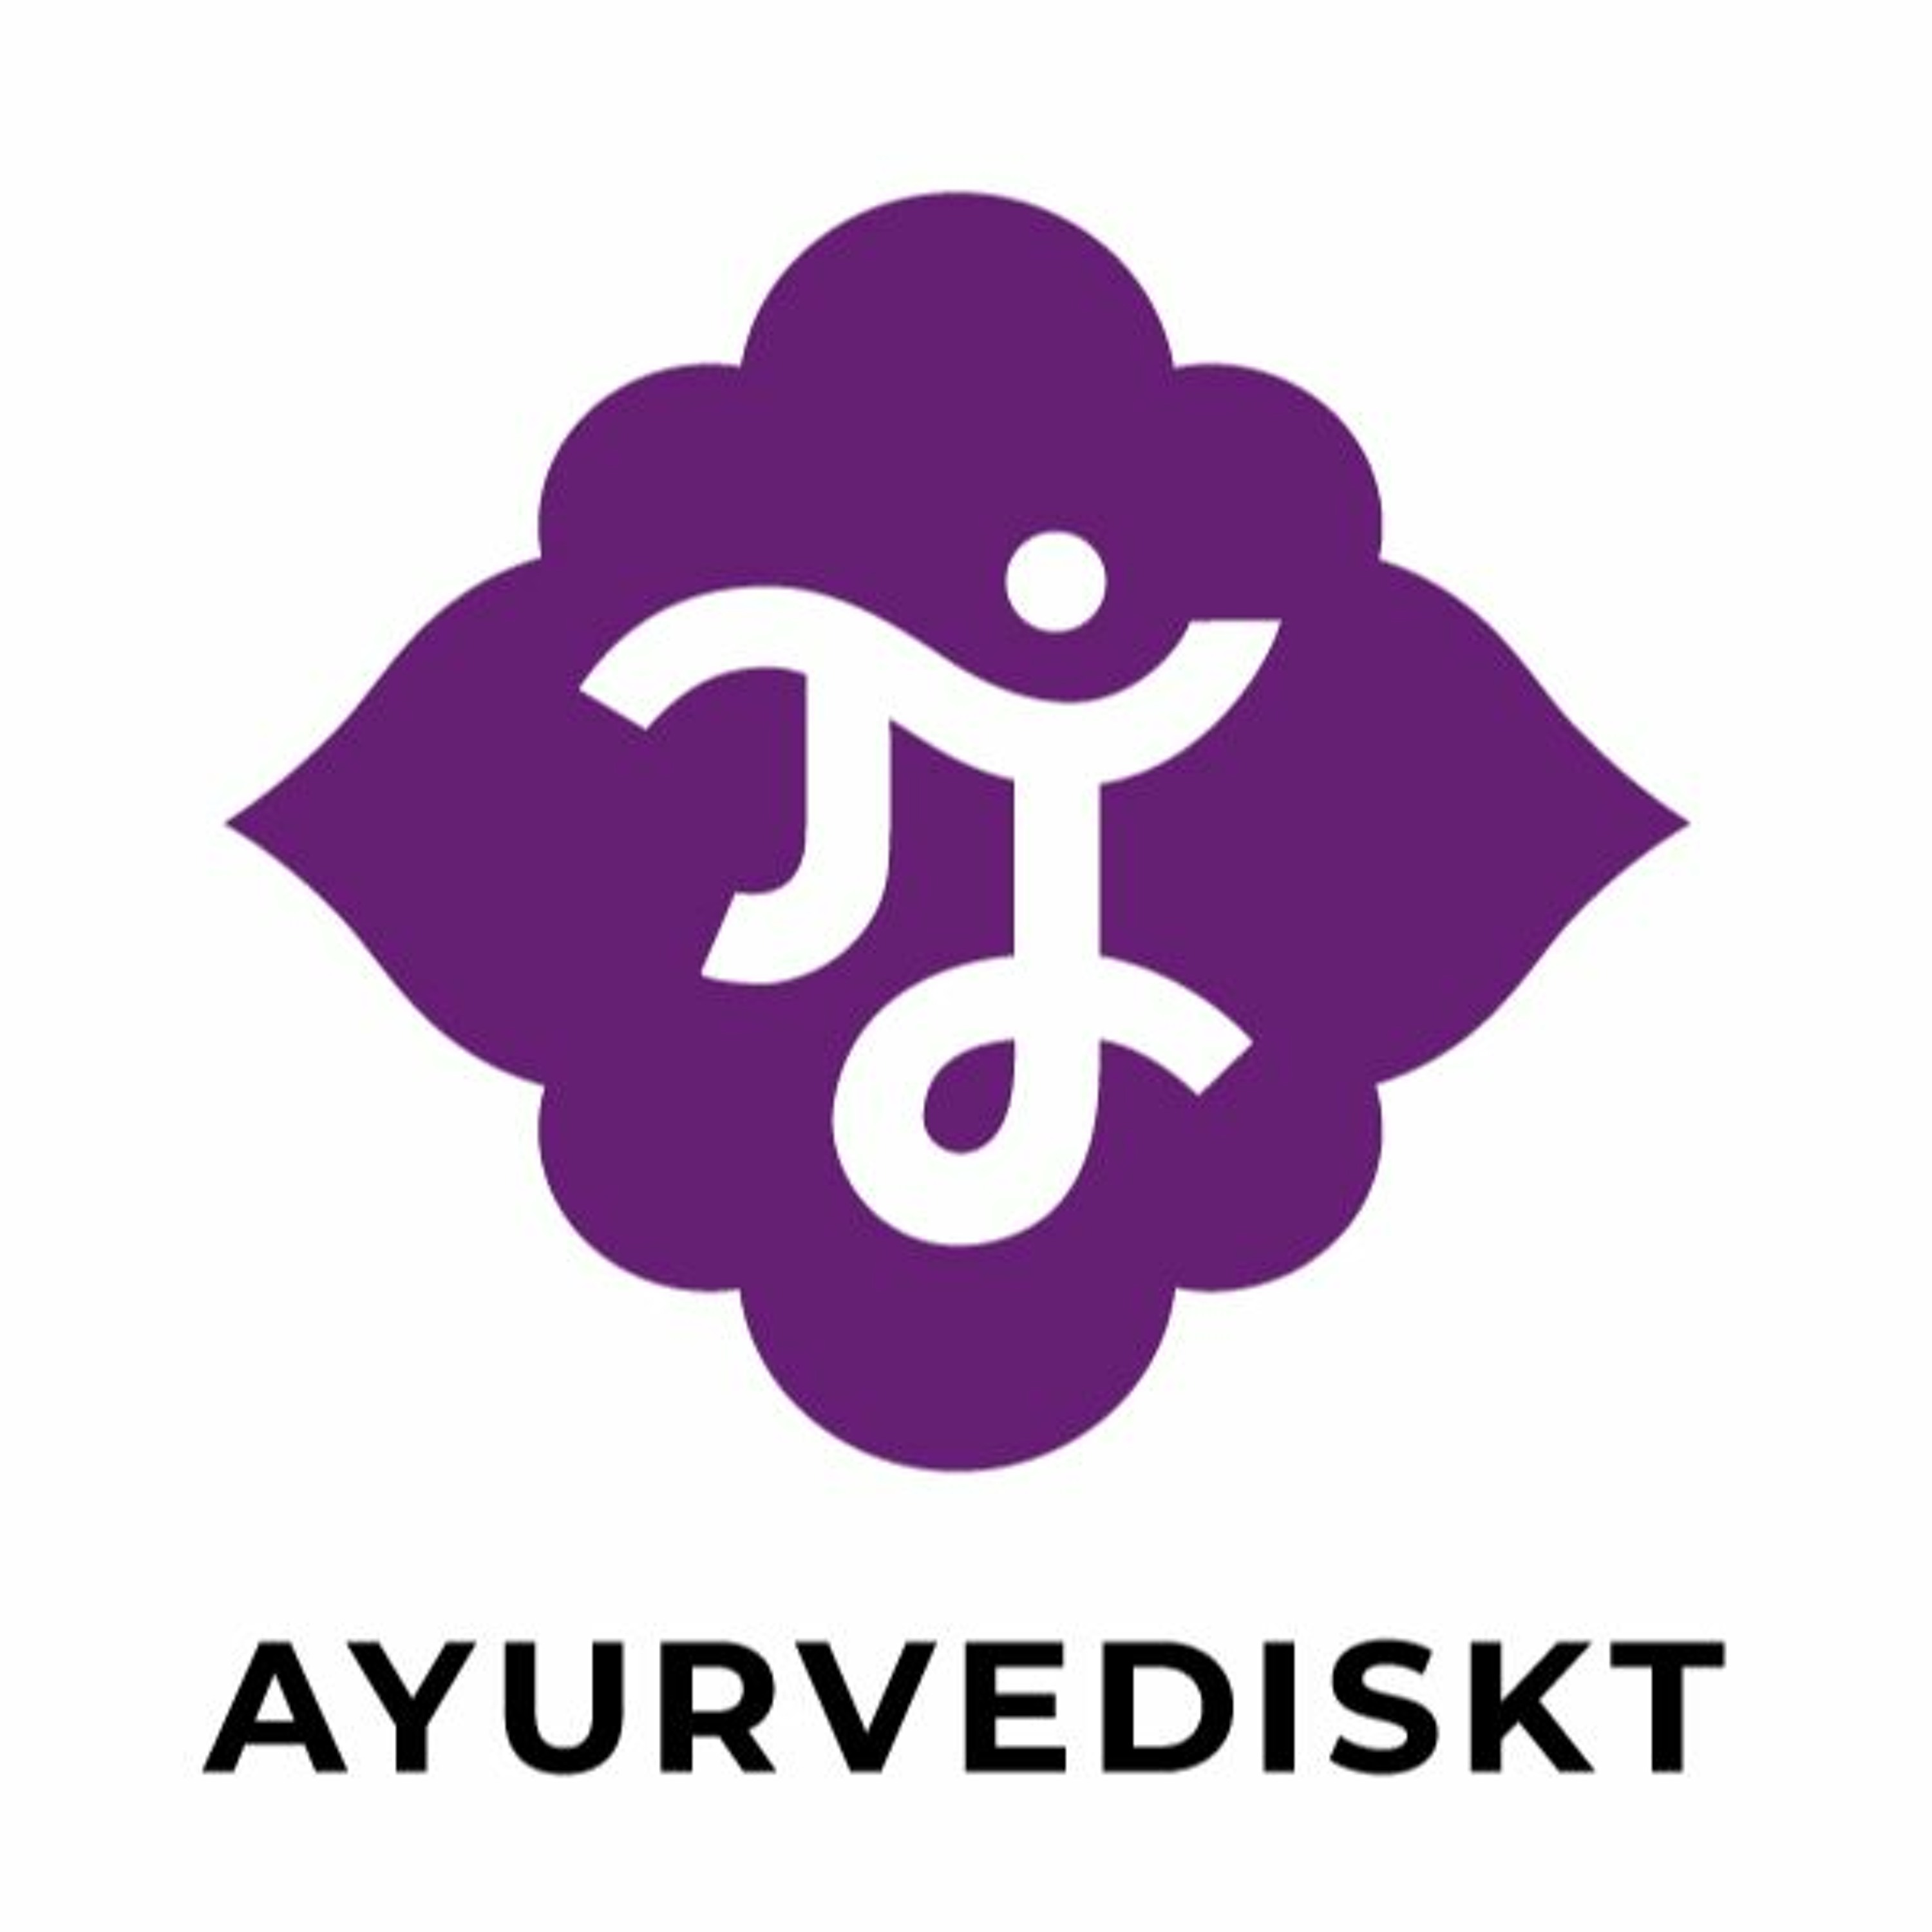 Podden Ayurvediskt avsnitt 8: Yoga, pranayama och upplysning med Sudhir Tiwari